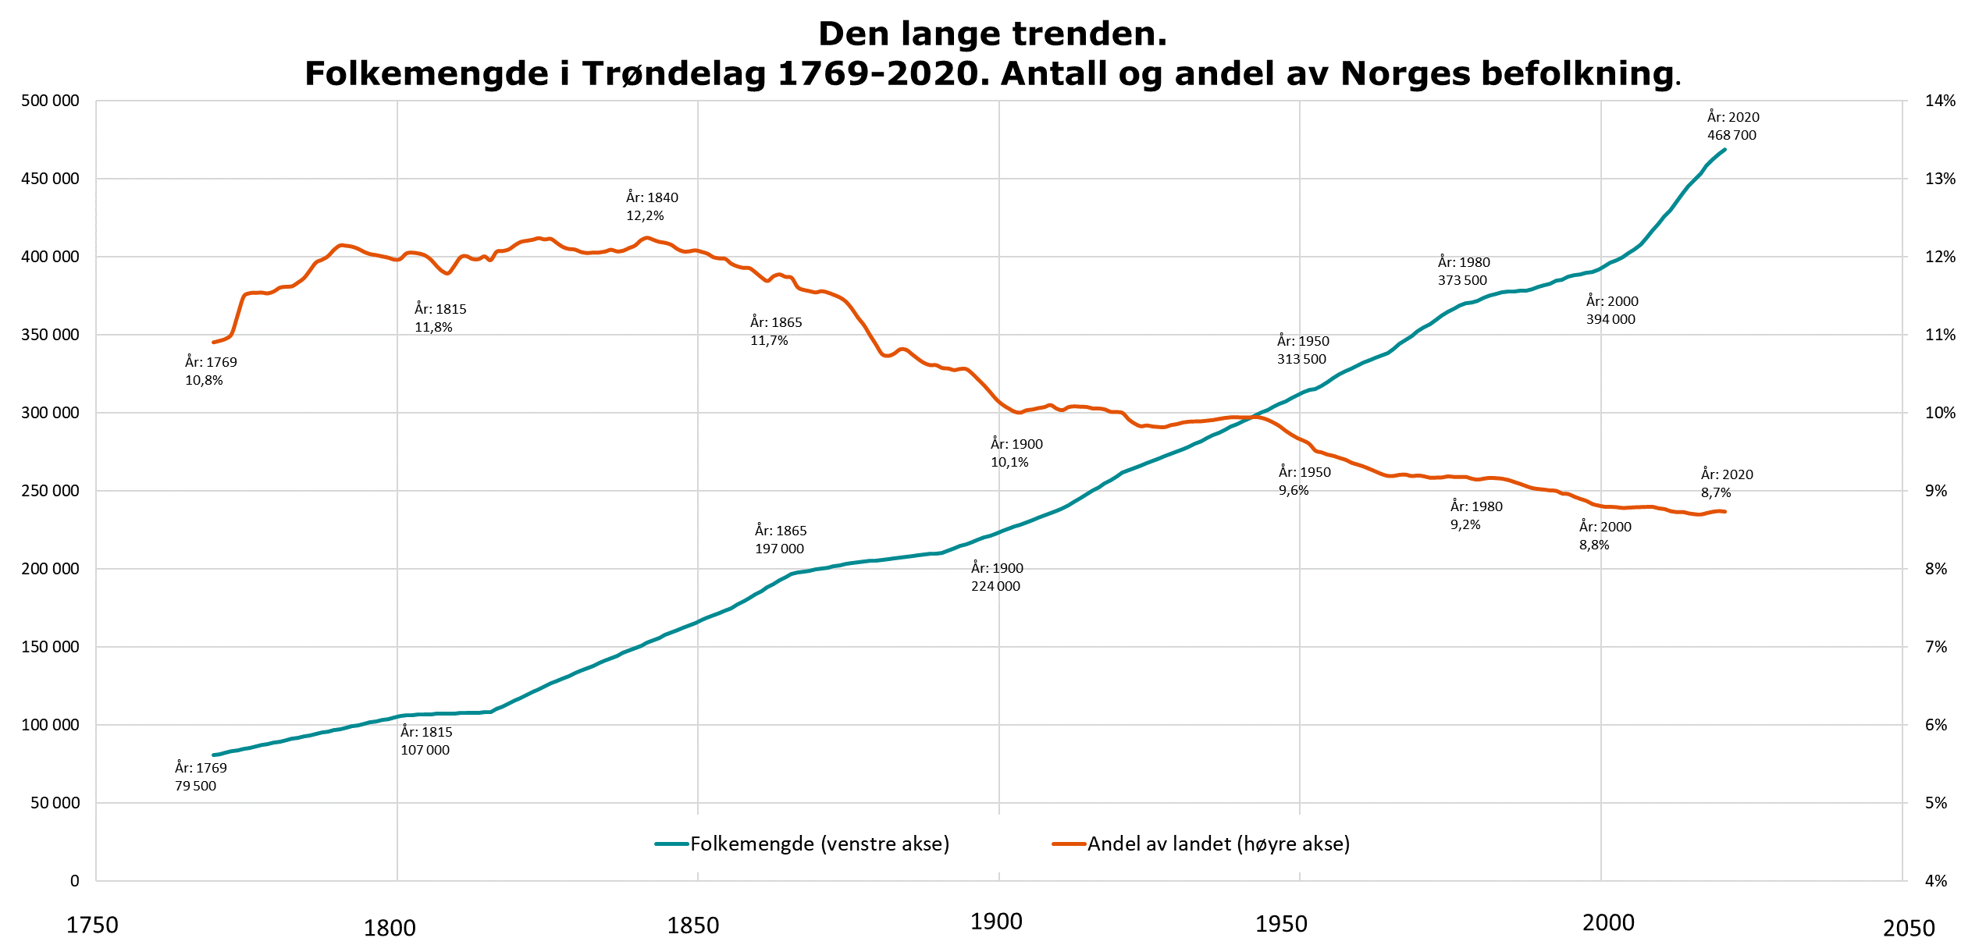 Den lange trenden. Folkemengde i Trøndelag 1769-2020. antall og andel av norges befolkning